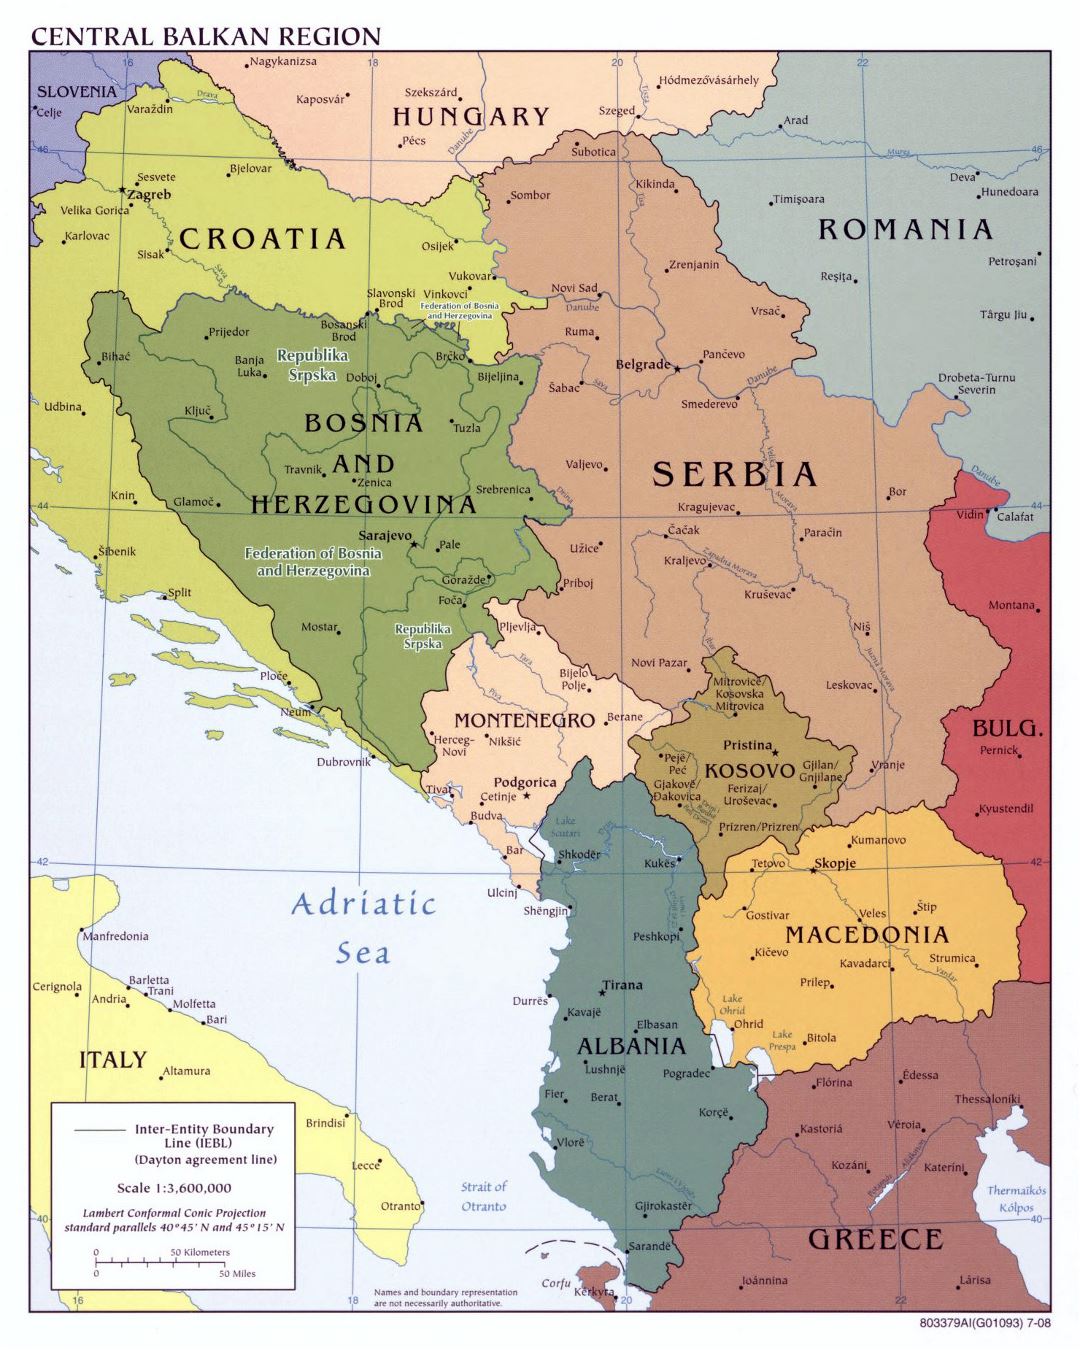 Mapa político grande de la Región Central de los Balcanes con las principales ciudades - 2008